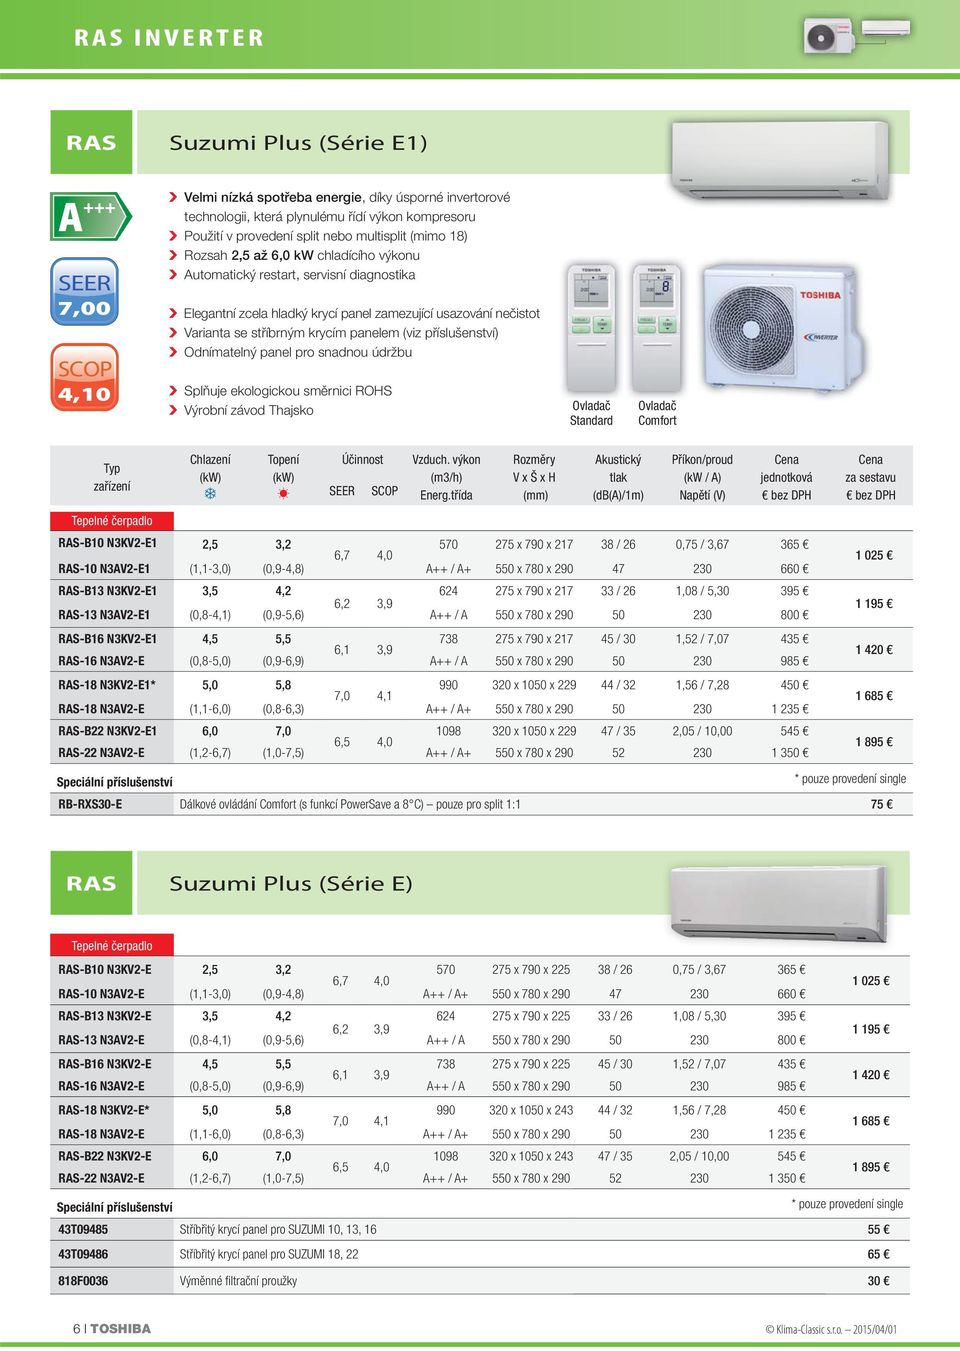 krycím panelem (viz příslušenství) Odnímatelný panel pro snadnou údržbu Splňuje ekologickou směrnici ROHS Výrobní závod Thajsko Ovladač Standard Ovladač Comfort zařízení Chlazení Topení SEER Účinnost